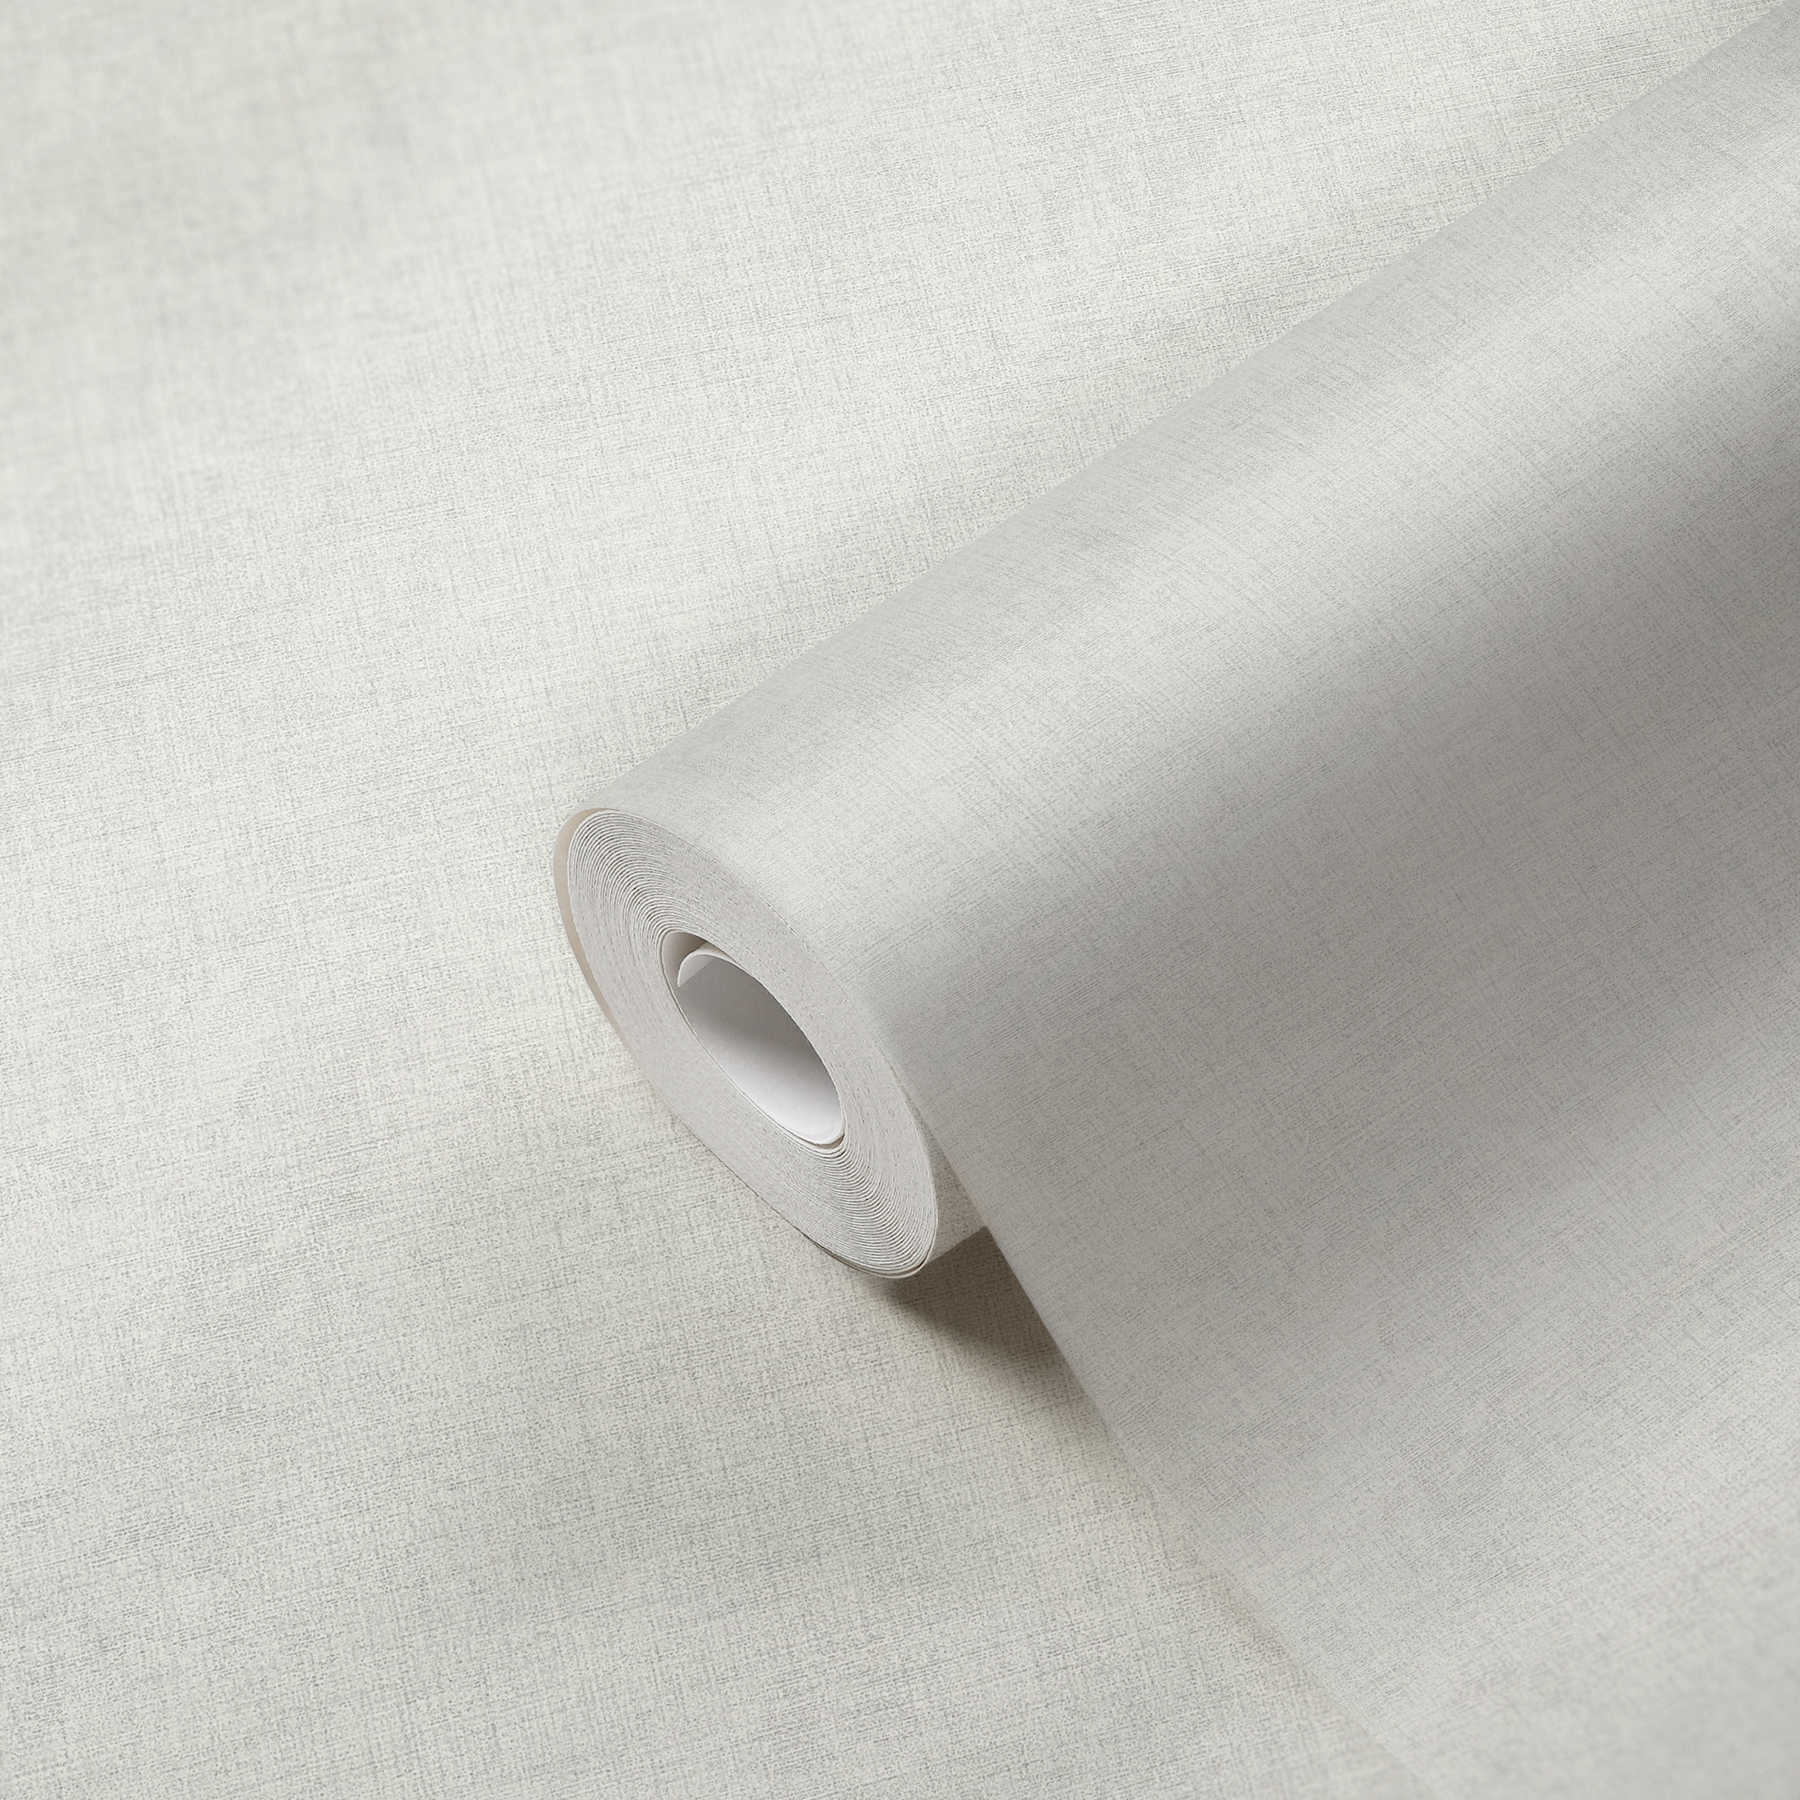             Linen look wallpaper plain, neutral - light grey
        